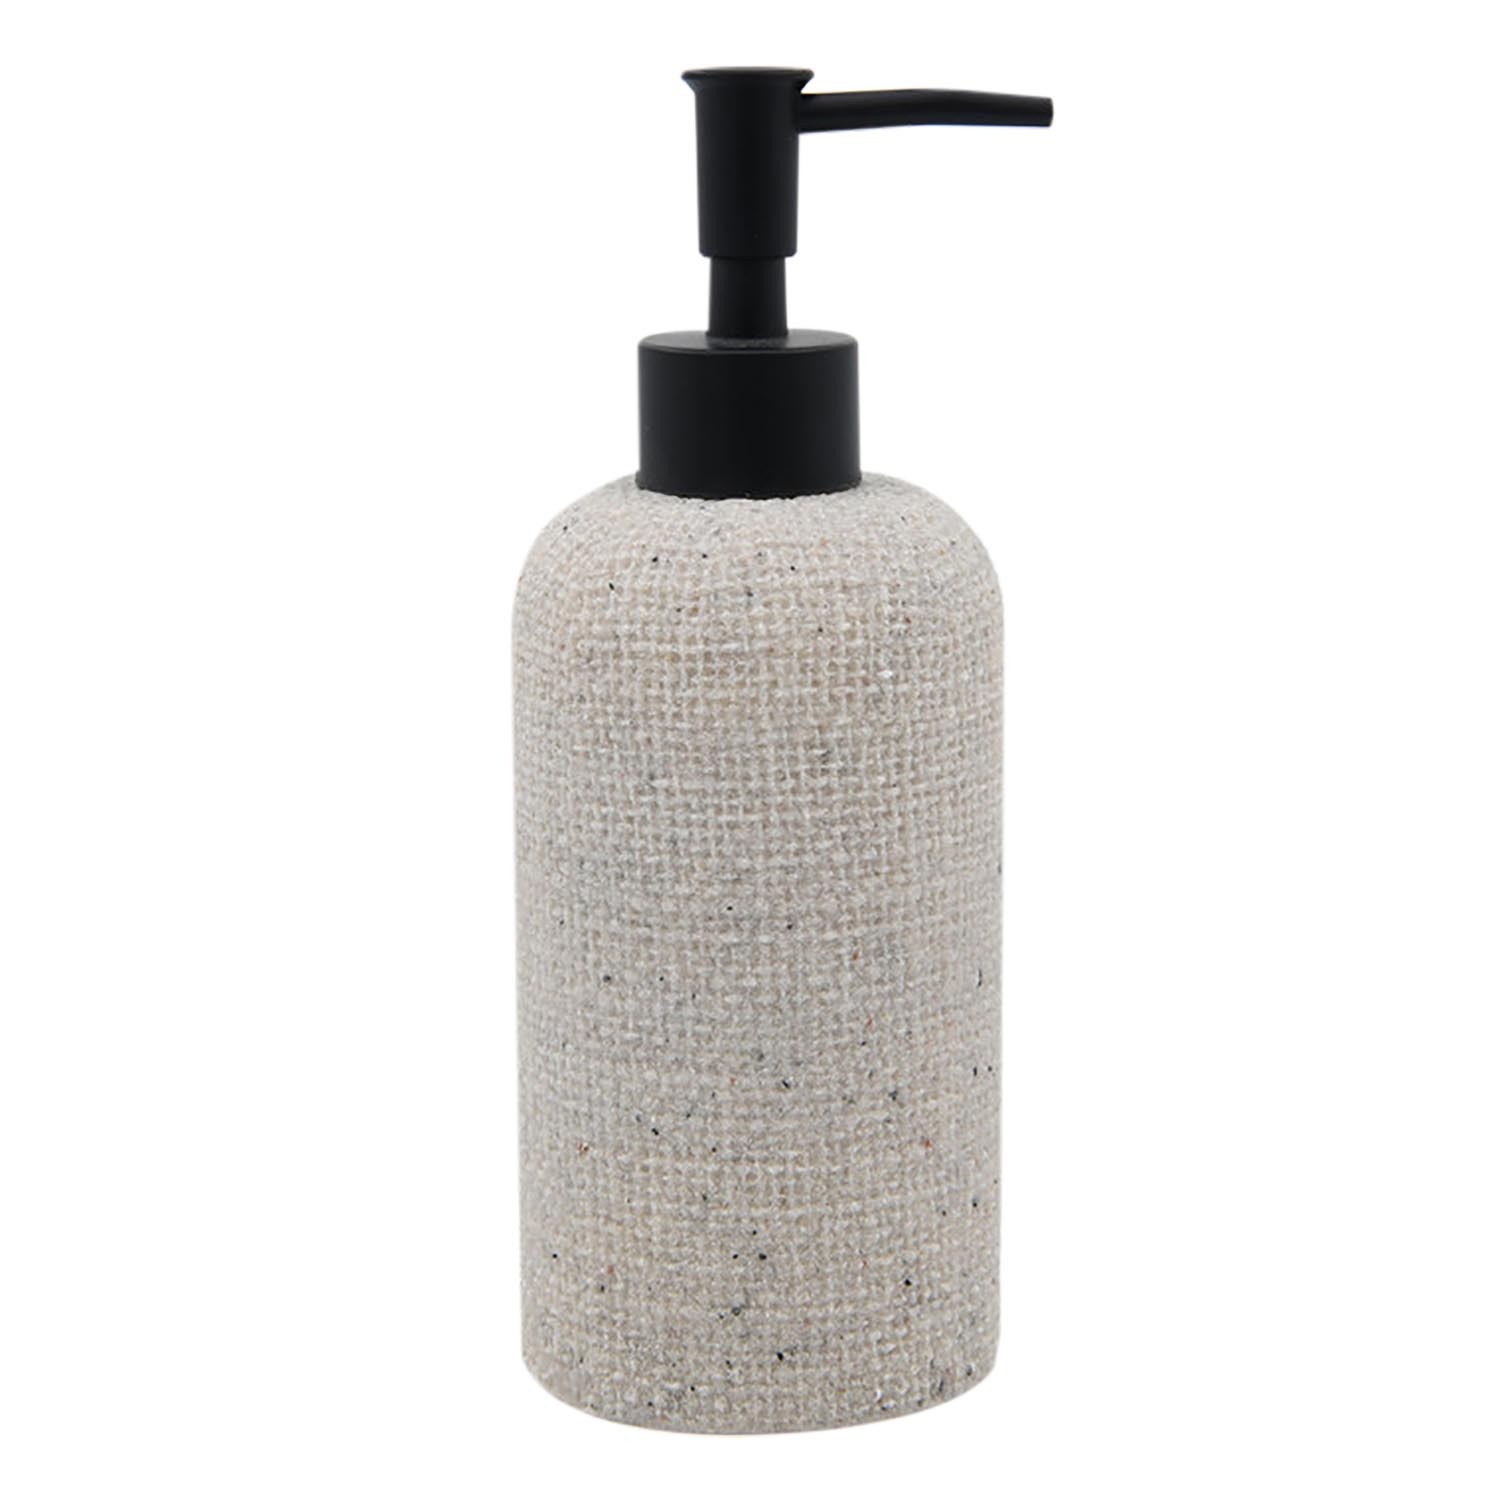 Natural Weaved Soap Dispenser Image